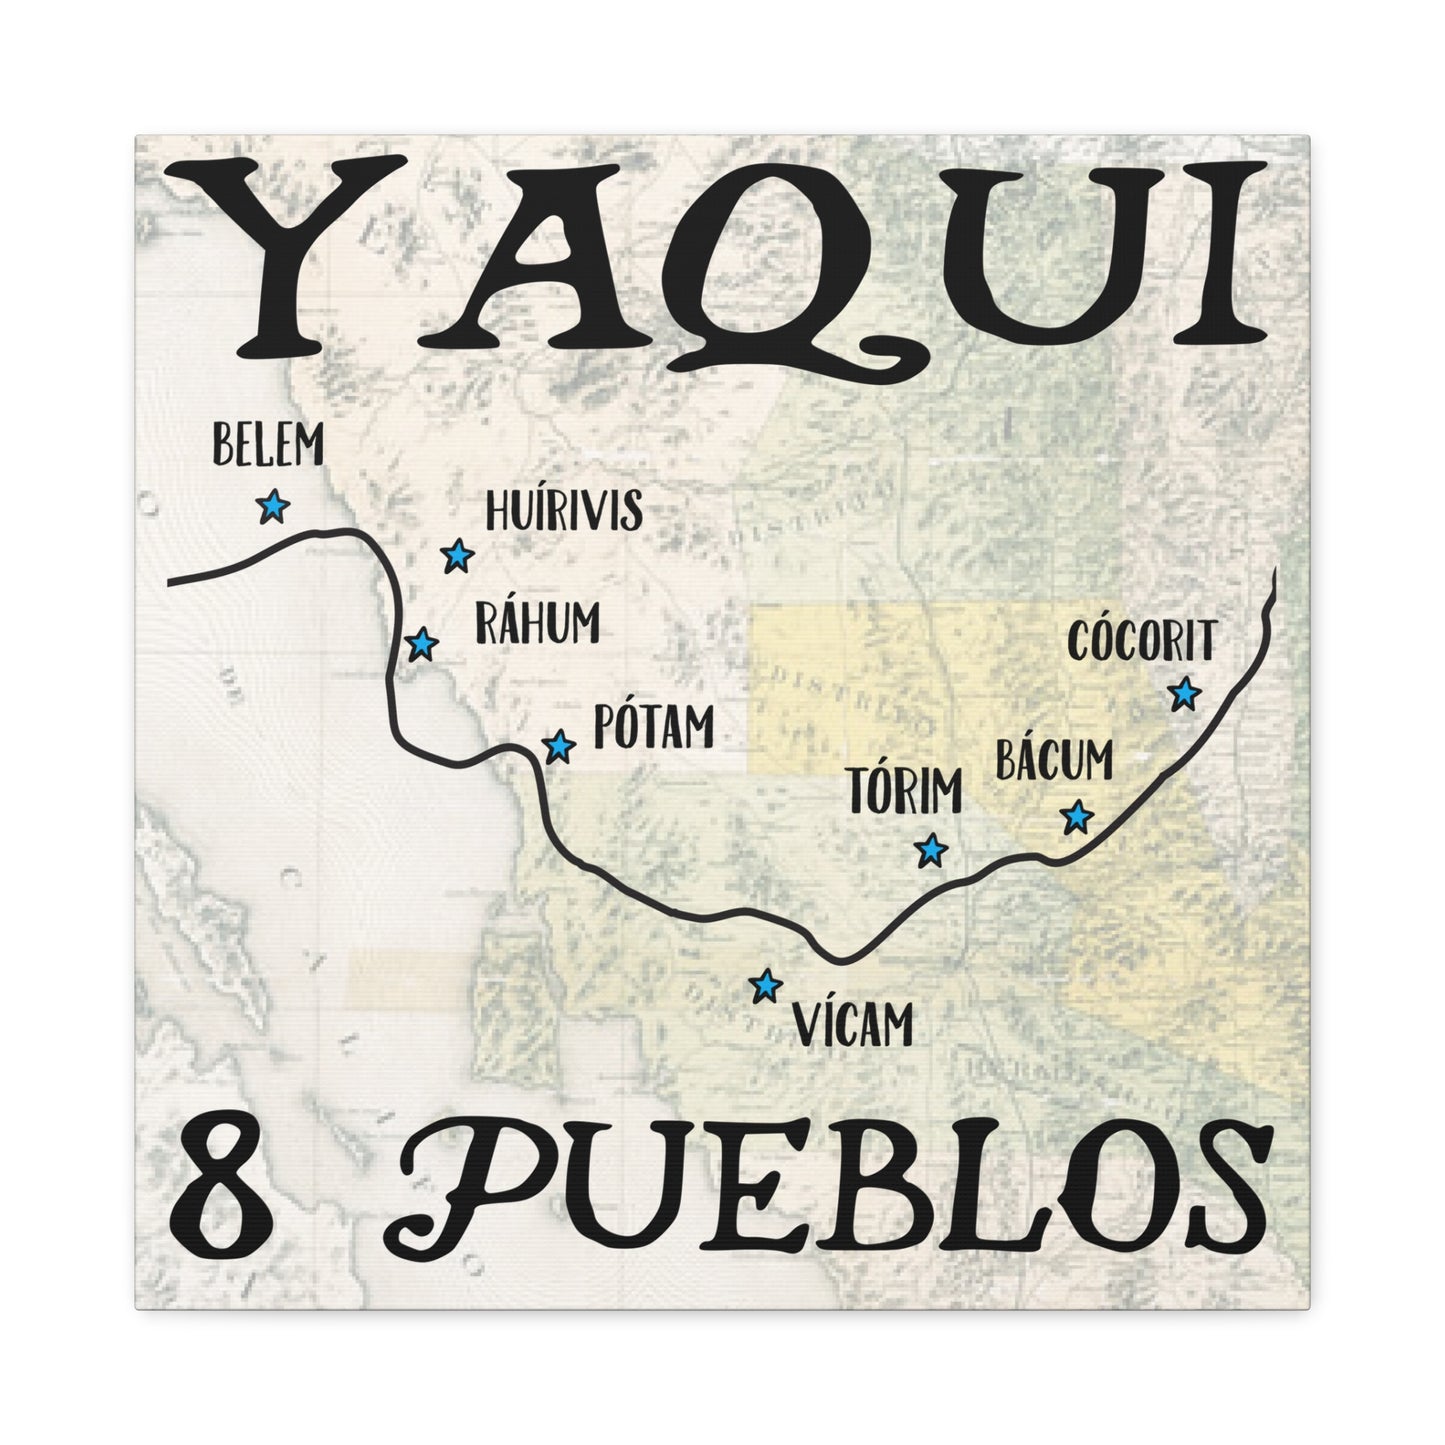 Обертка для галереи холста Yaqui Pueblos 20 x 20 дюймов, индейцы